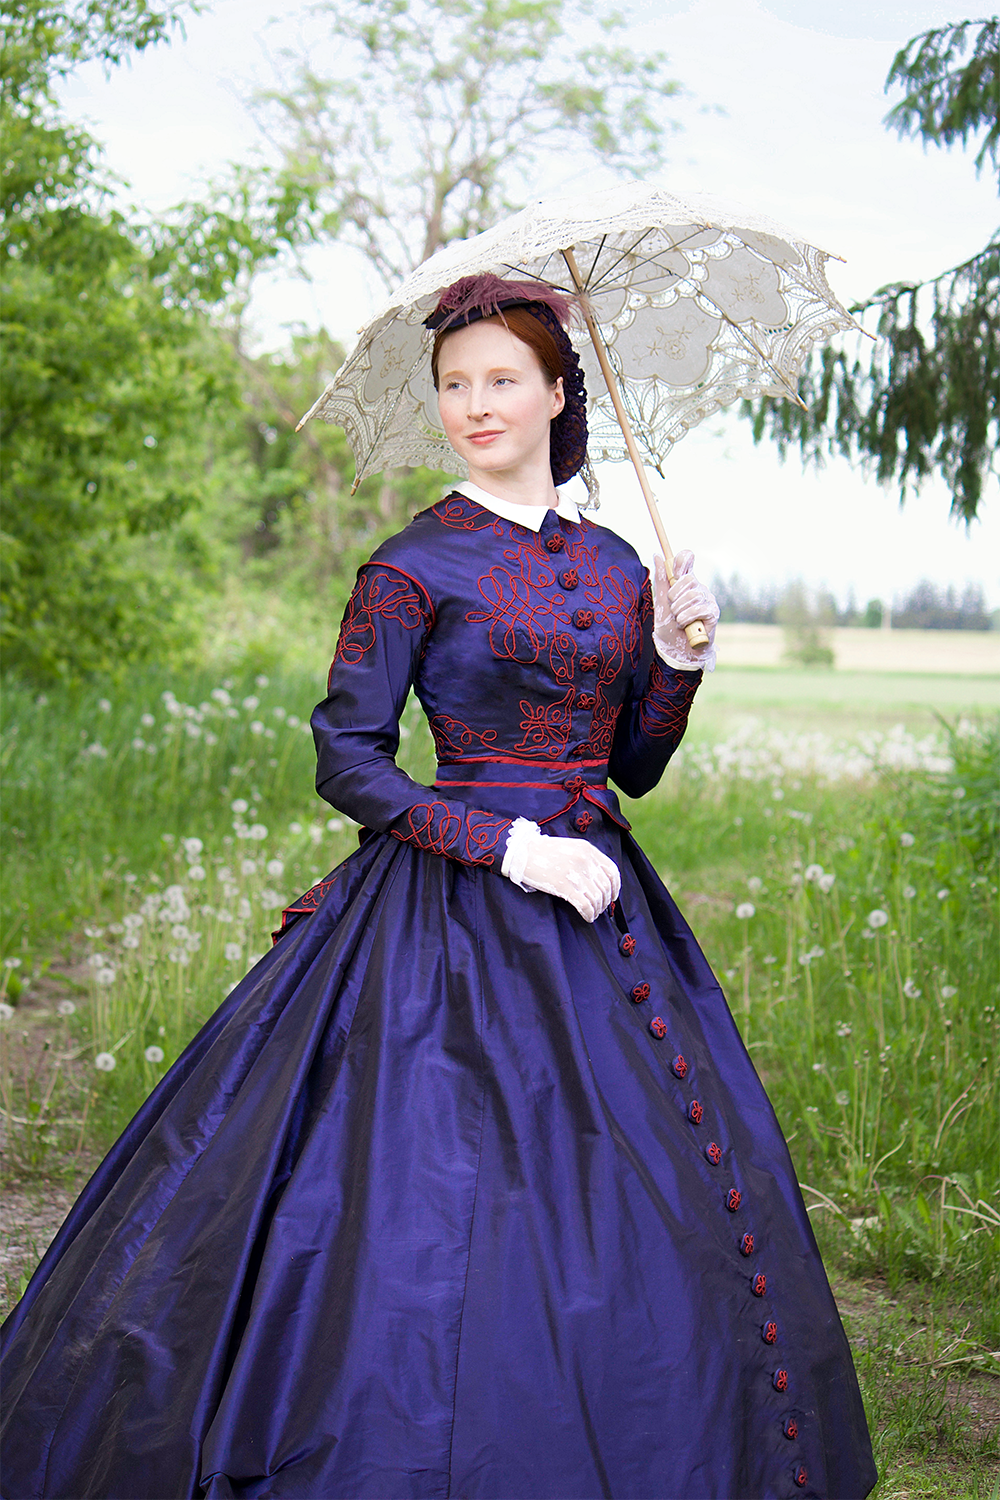 Atelier Delska Dressmaking - bespoke historical garments